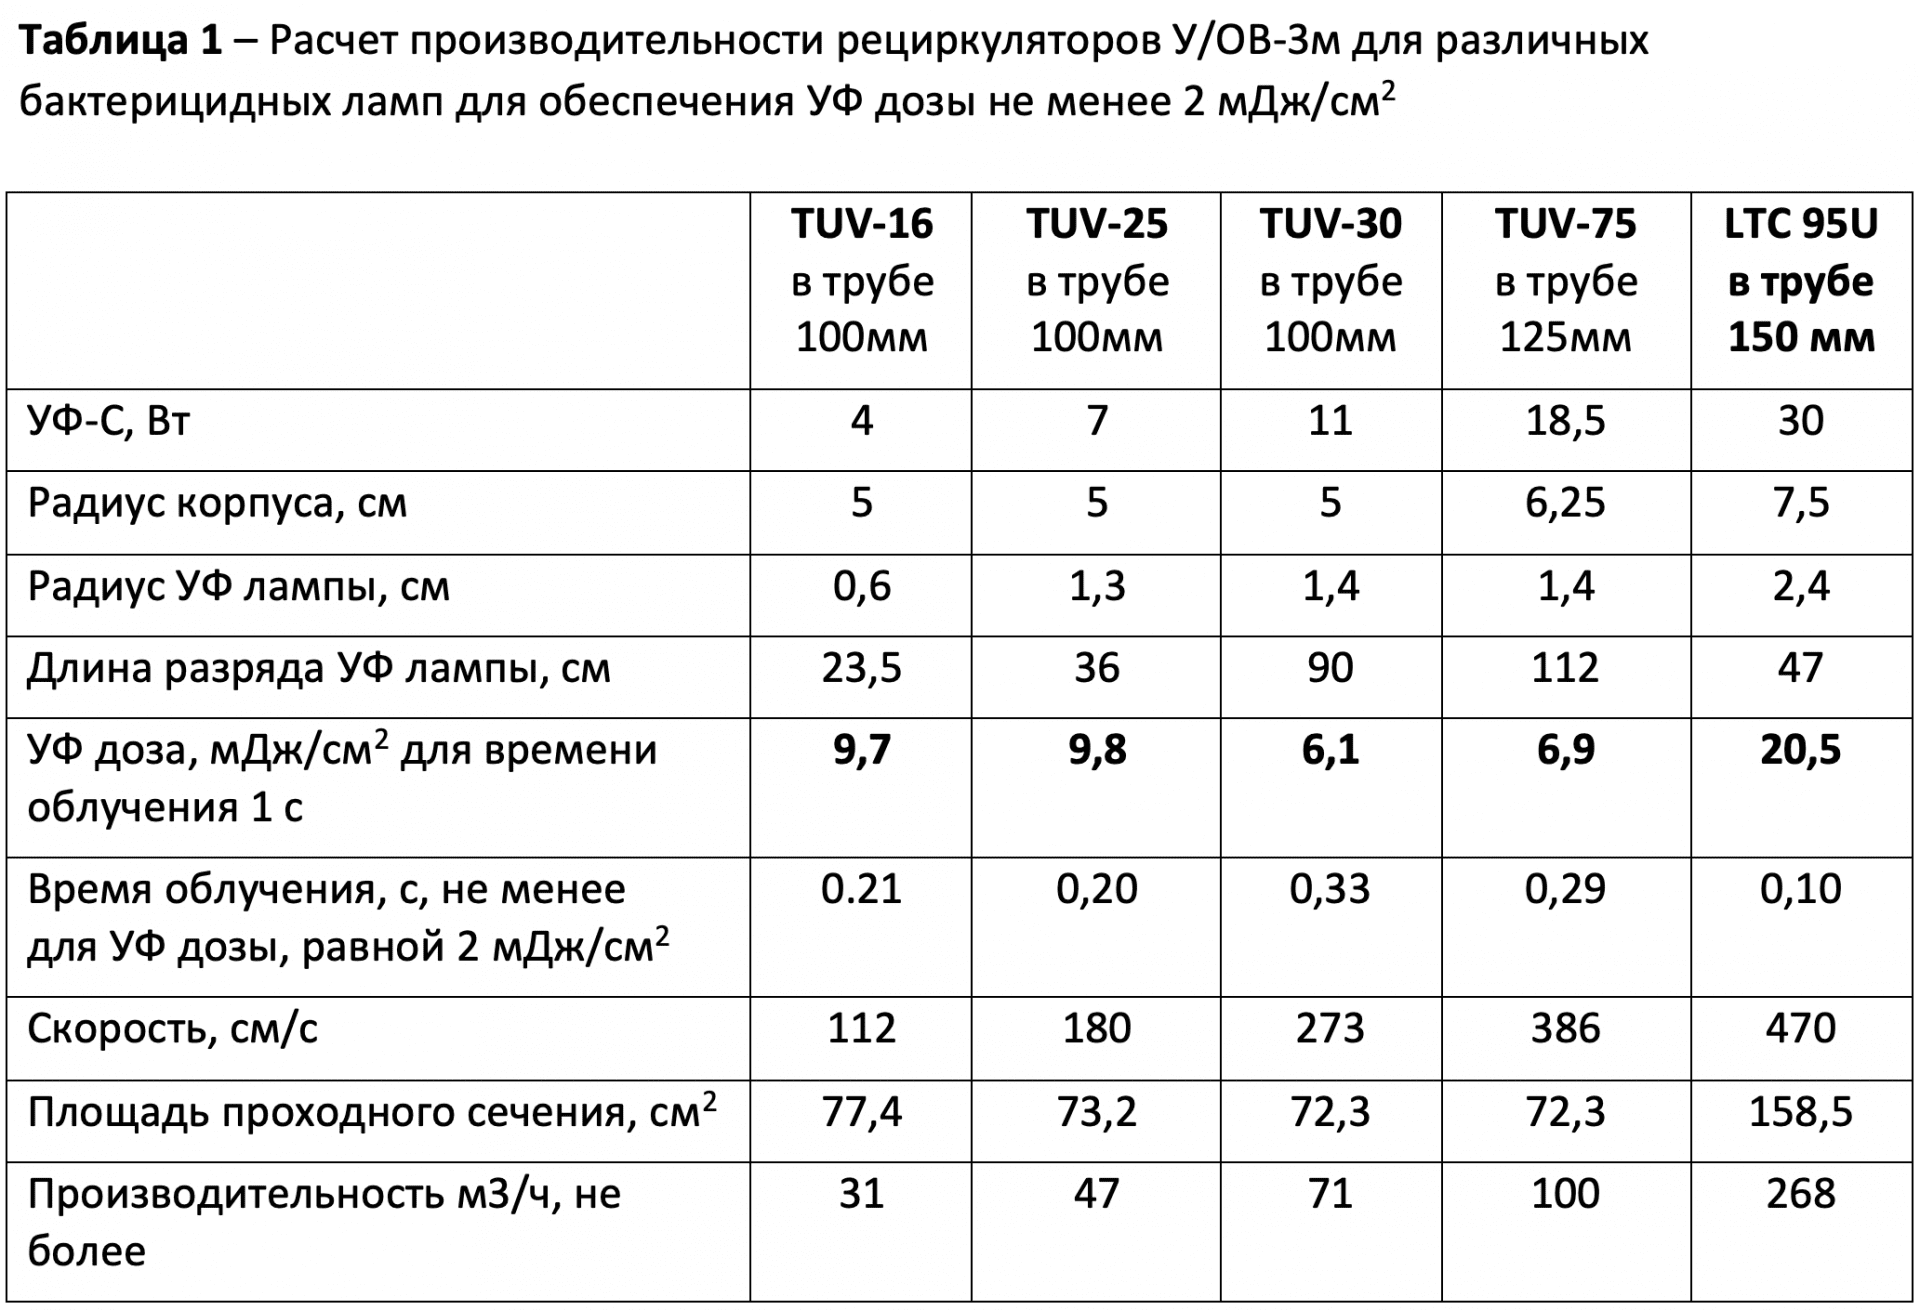 Расчет производительности рециркуляторов У/ОВ-3м